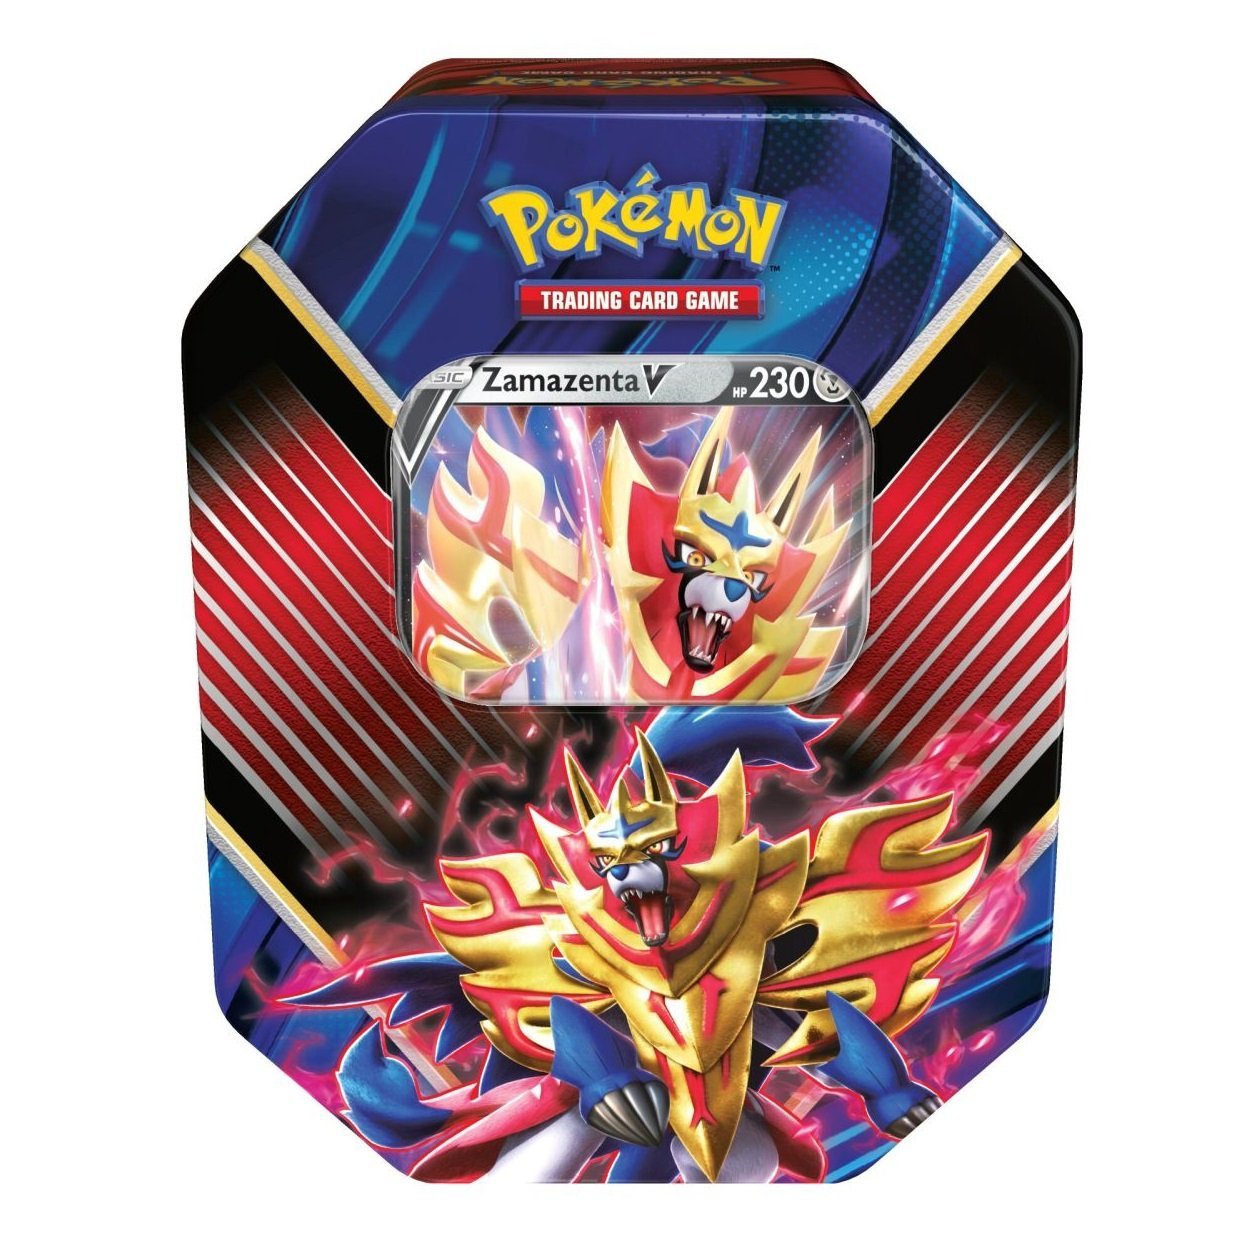 Pokémon TCG: Legends of Galar Tin-Zamazenta V-The Pokémon Company International-Ace Cards & Collectibles